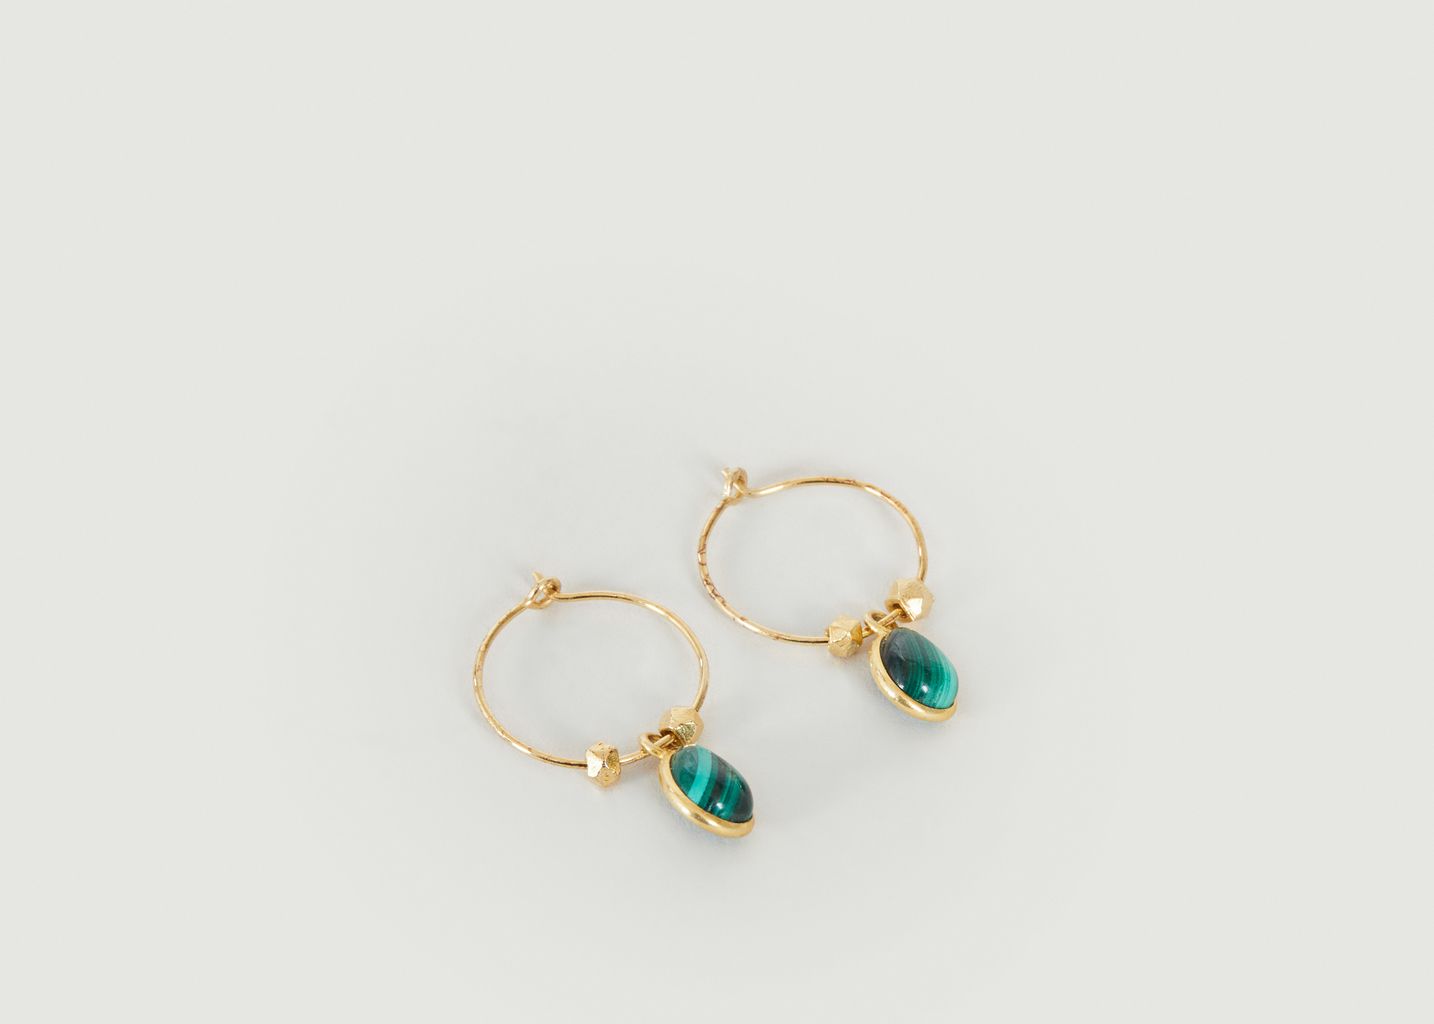 Creole earrings with malachite Mini Bindi - Wildstone Paris